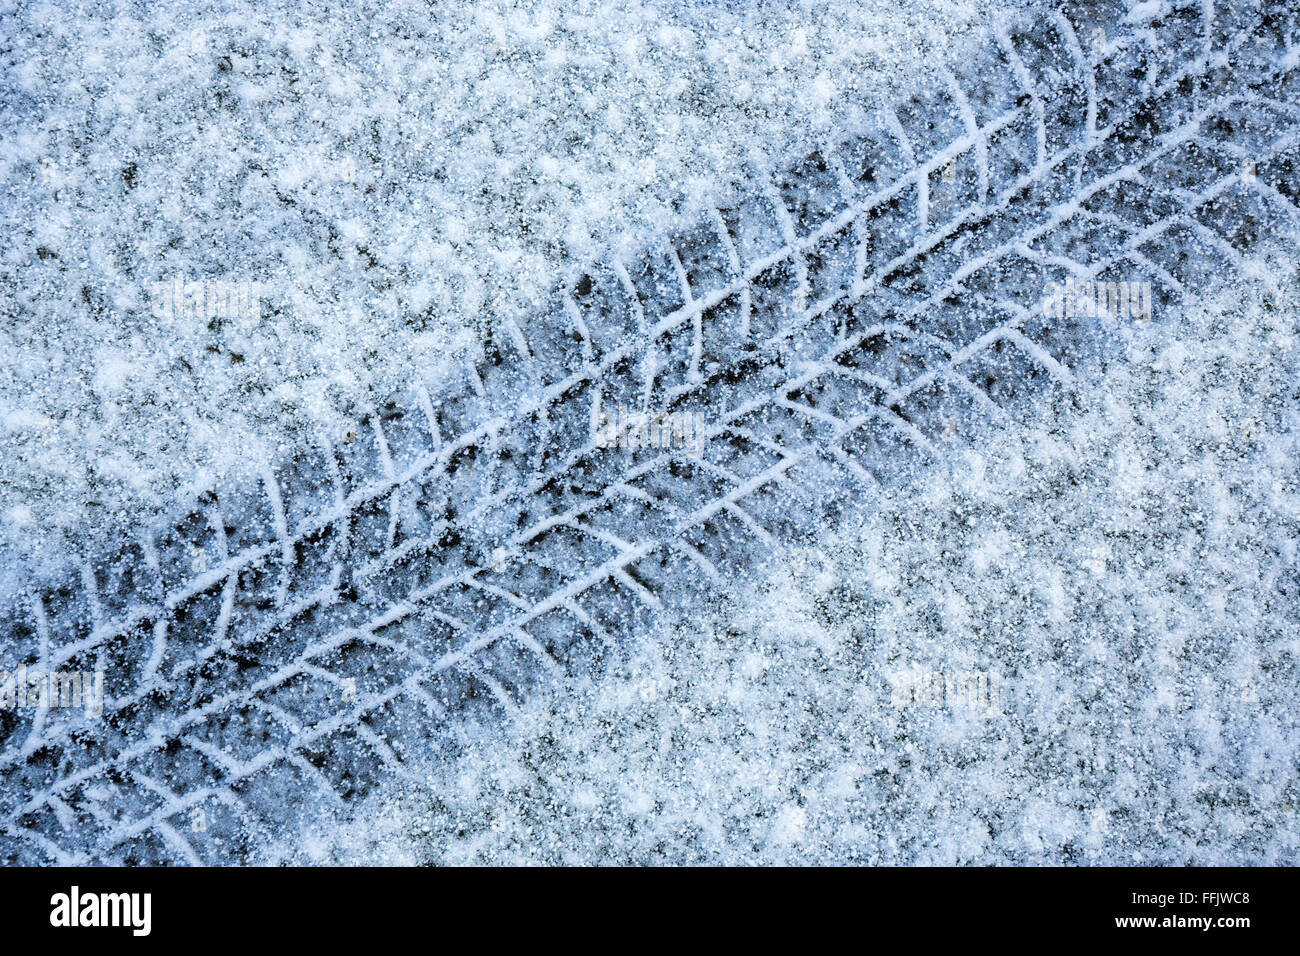 Reifenspuren im Schnee - fahren im Winterwetter Stockfoto